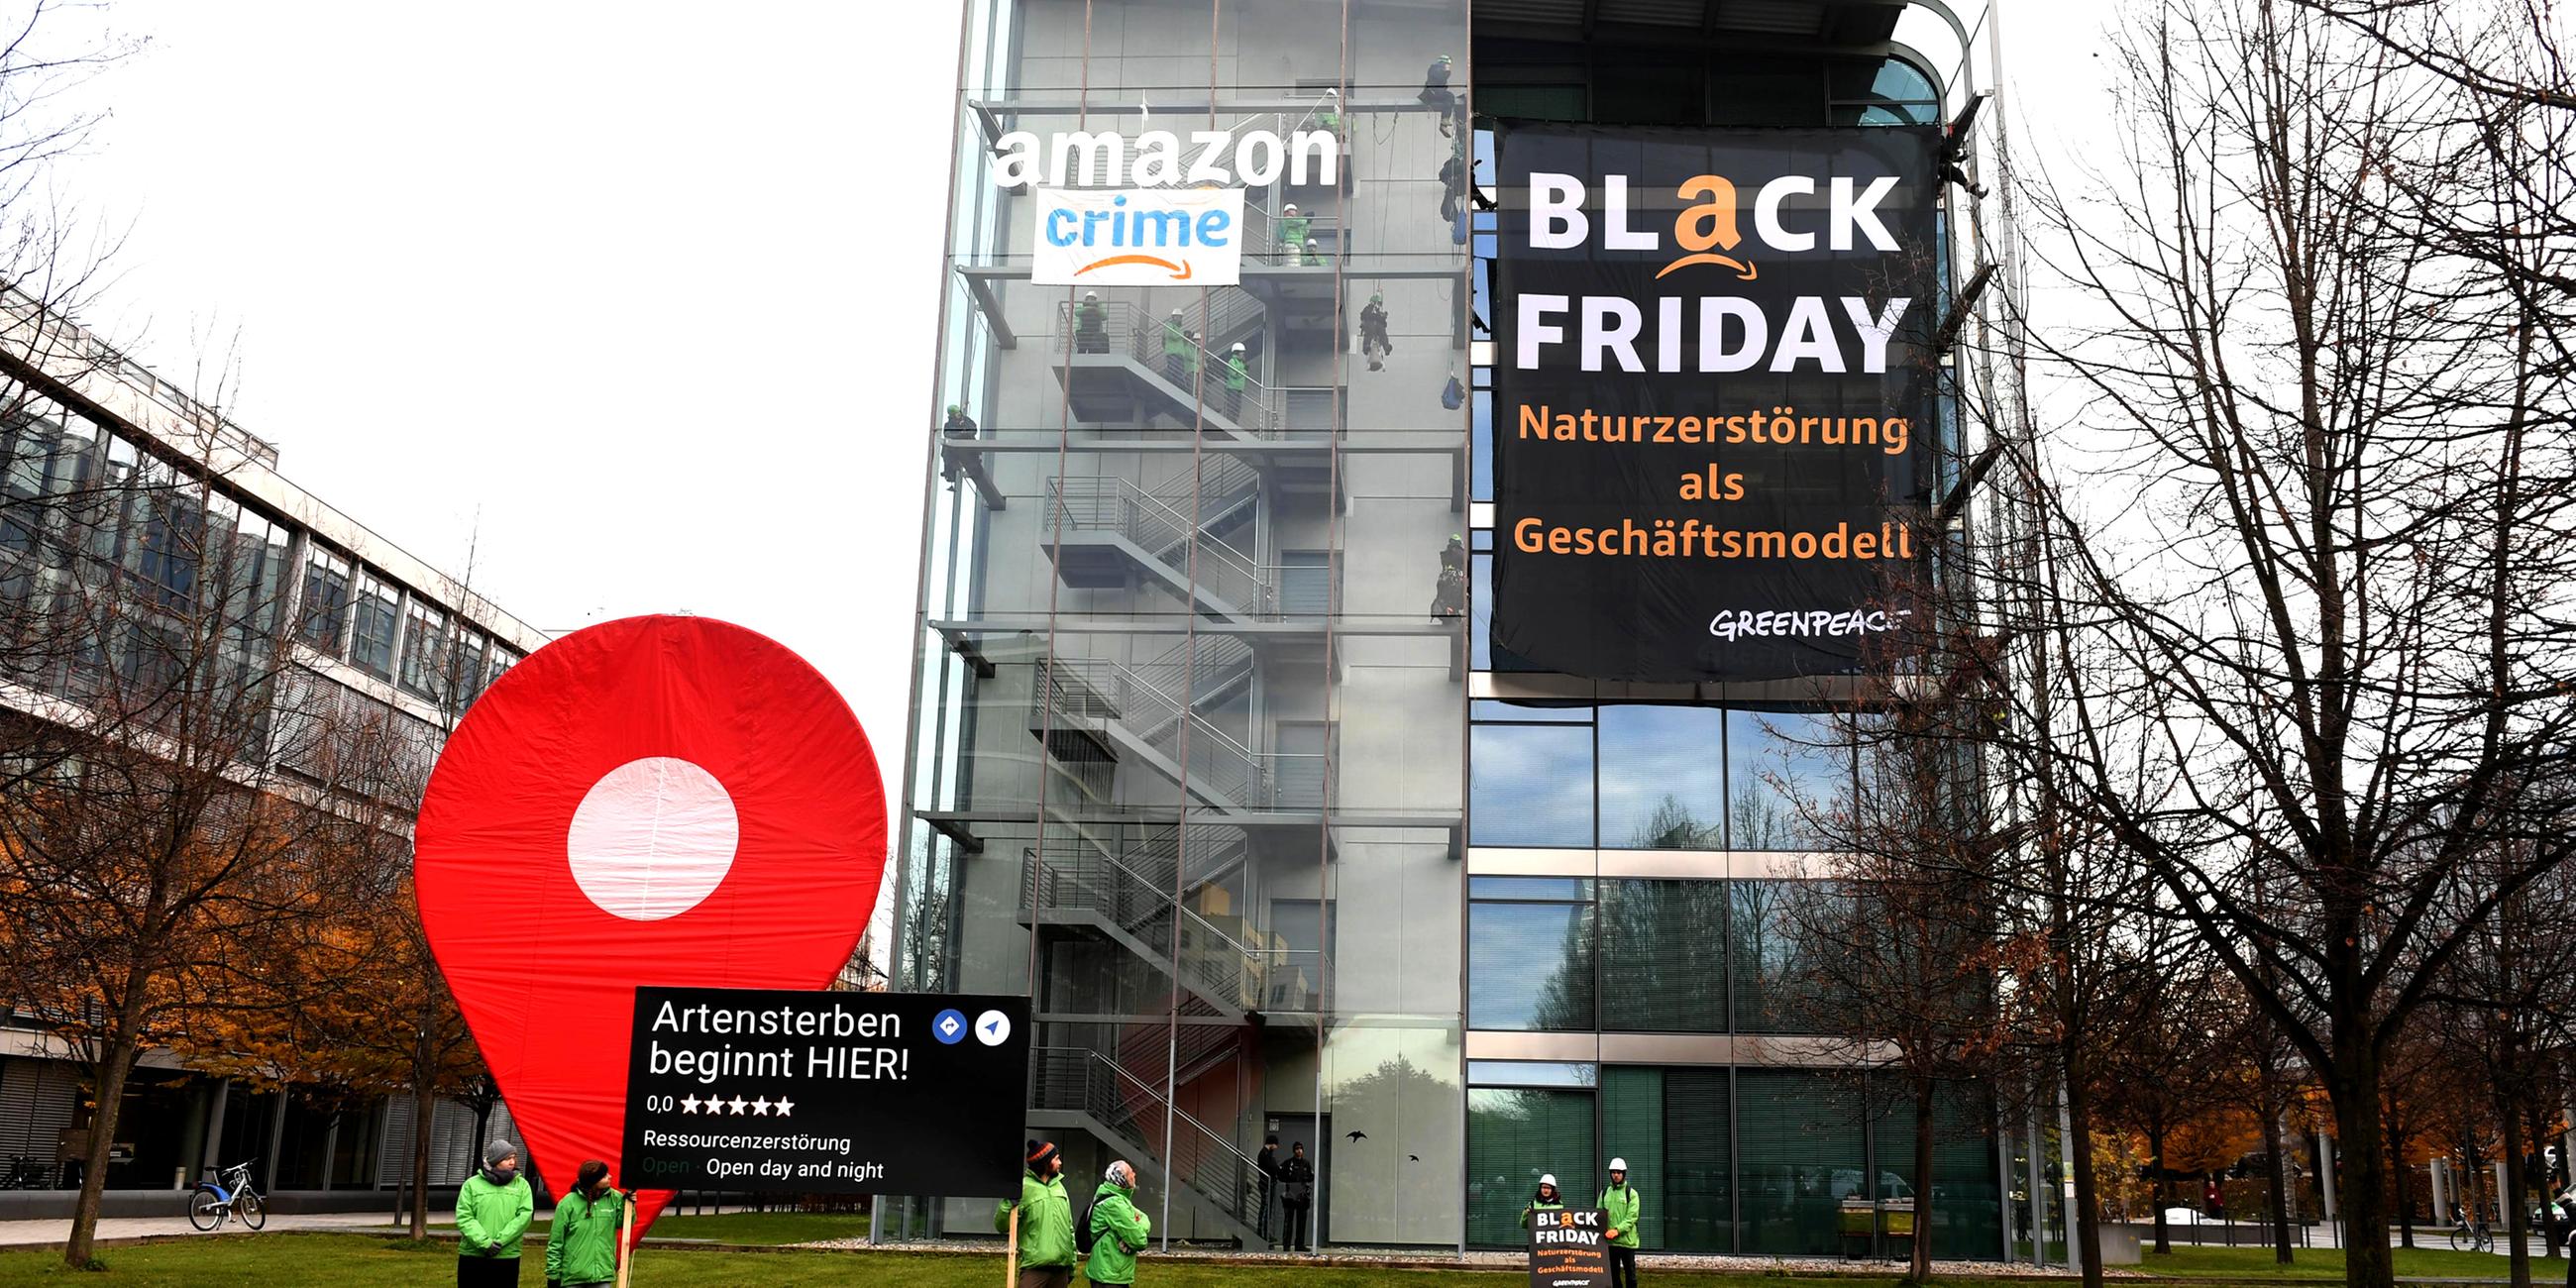 Greenpeace-Aktivisten protestieren während der Rabattaktion Black Friday gegen die Ressourcenverschwendung des Online-Versandhändlers Amazon und hängen dort Plakate auf mit der Aufschrift "crime" und "Black Friday - Naturzerstörung als Geschäftsmodell".